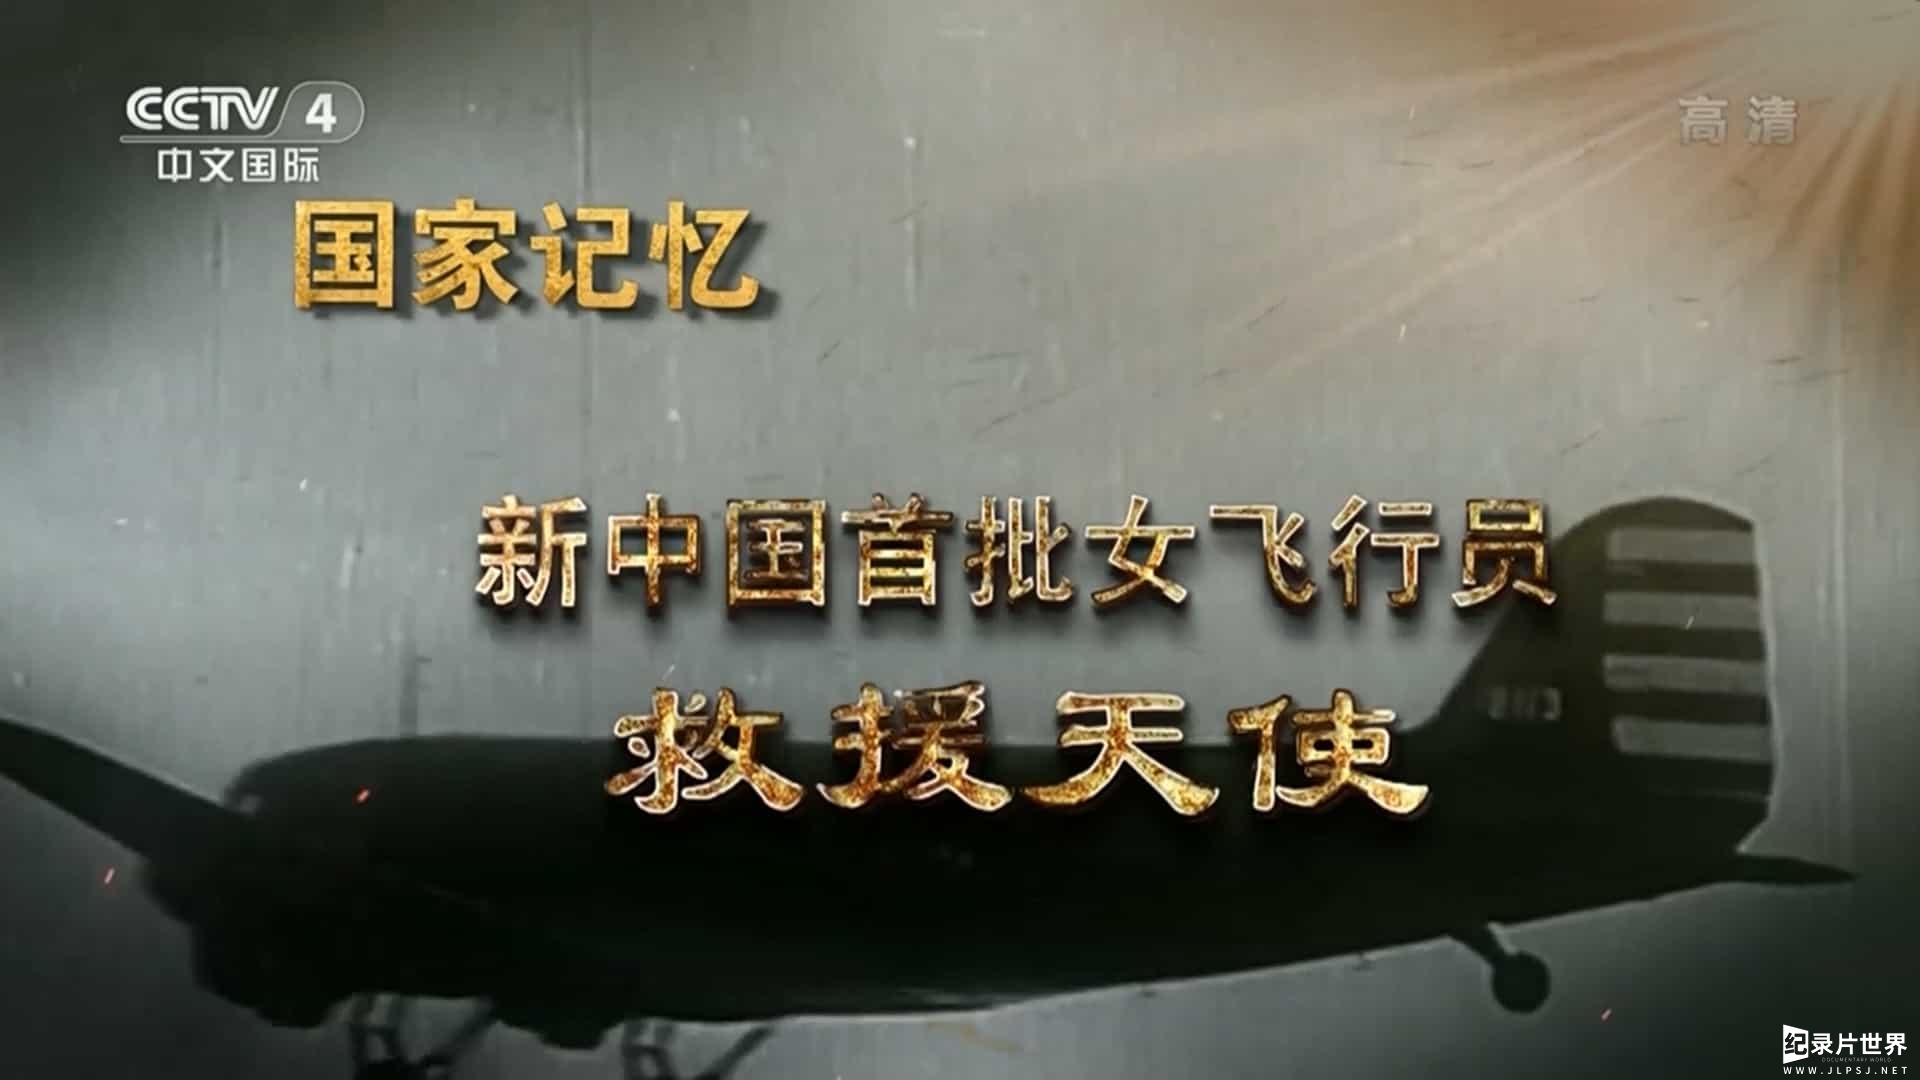 央视国家记忆系列《新中国首批女飞行员/共和国首批女飞行员》